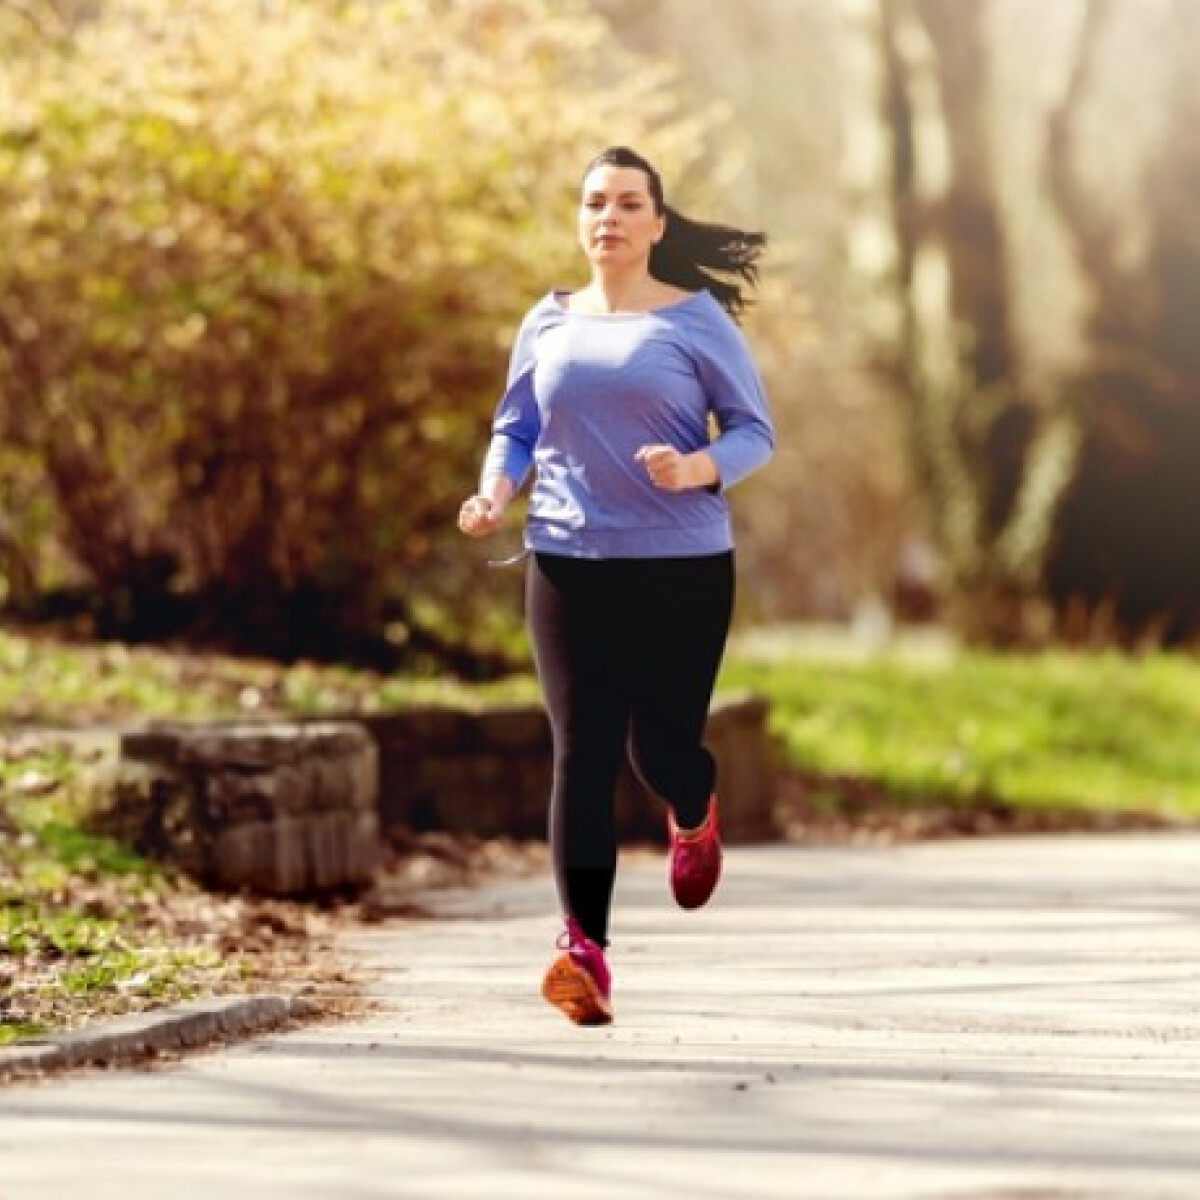 Régóta szeretnéd kipróbálni a futást? 3 tanács edző szakértőnktől, ha tavasszal belevágnál